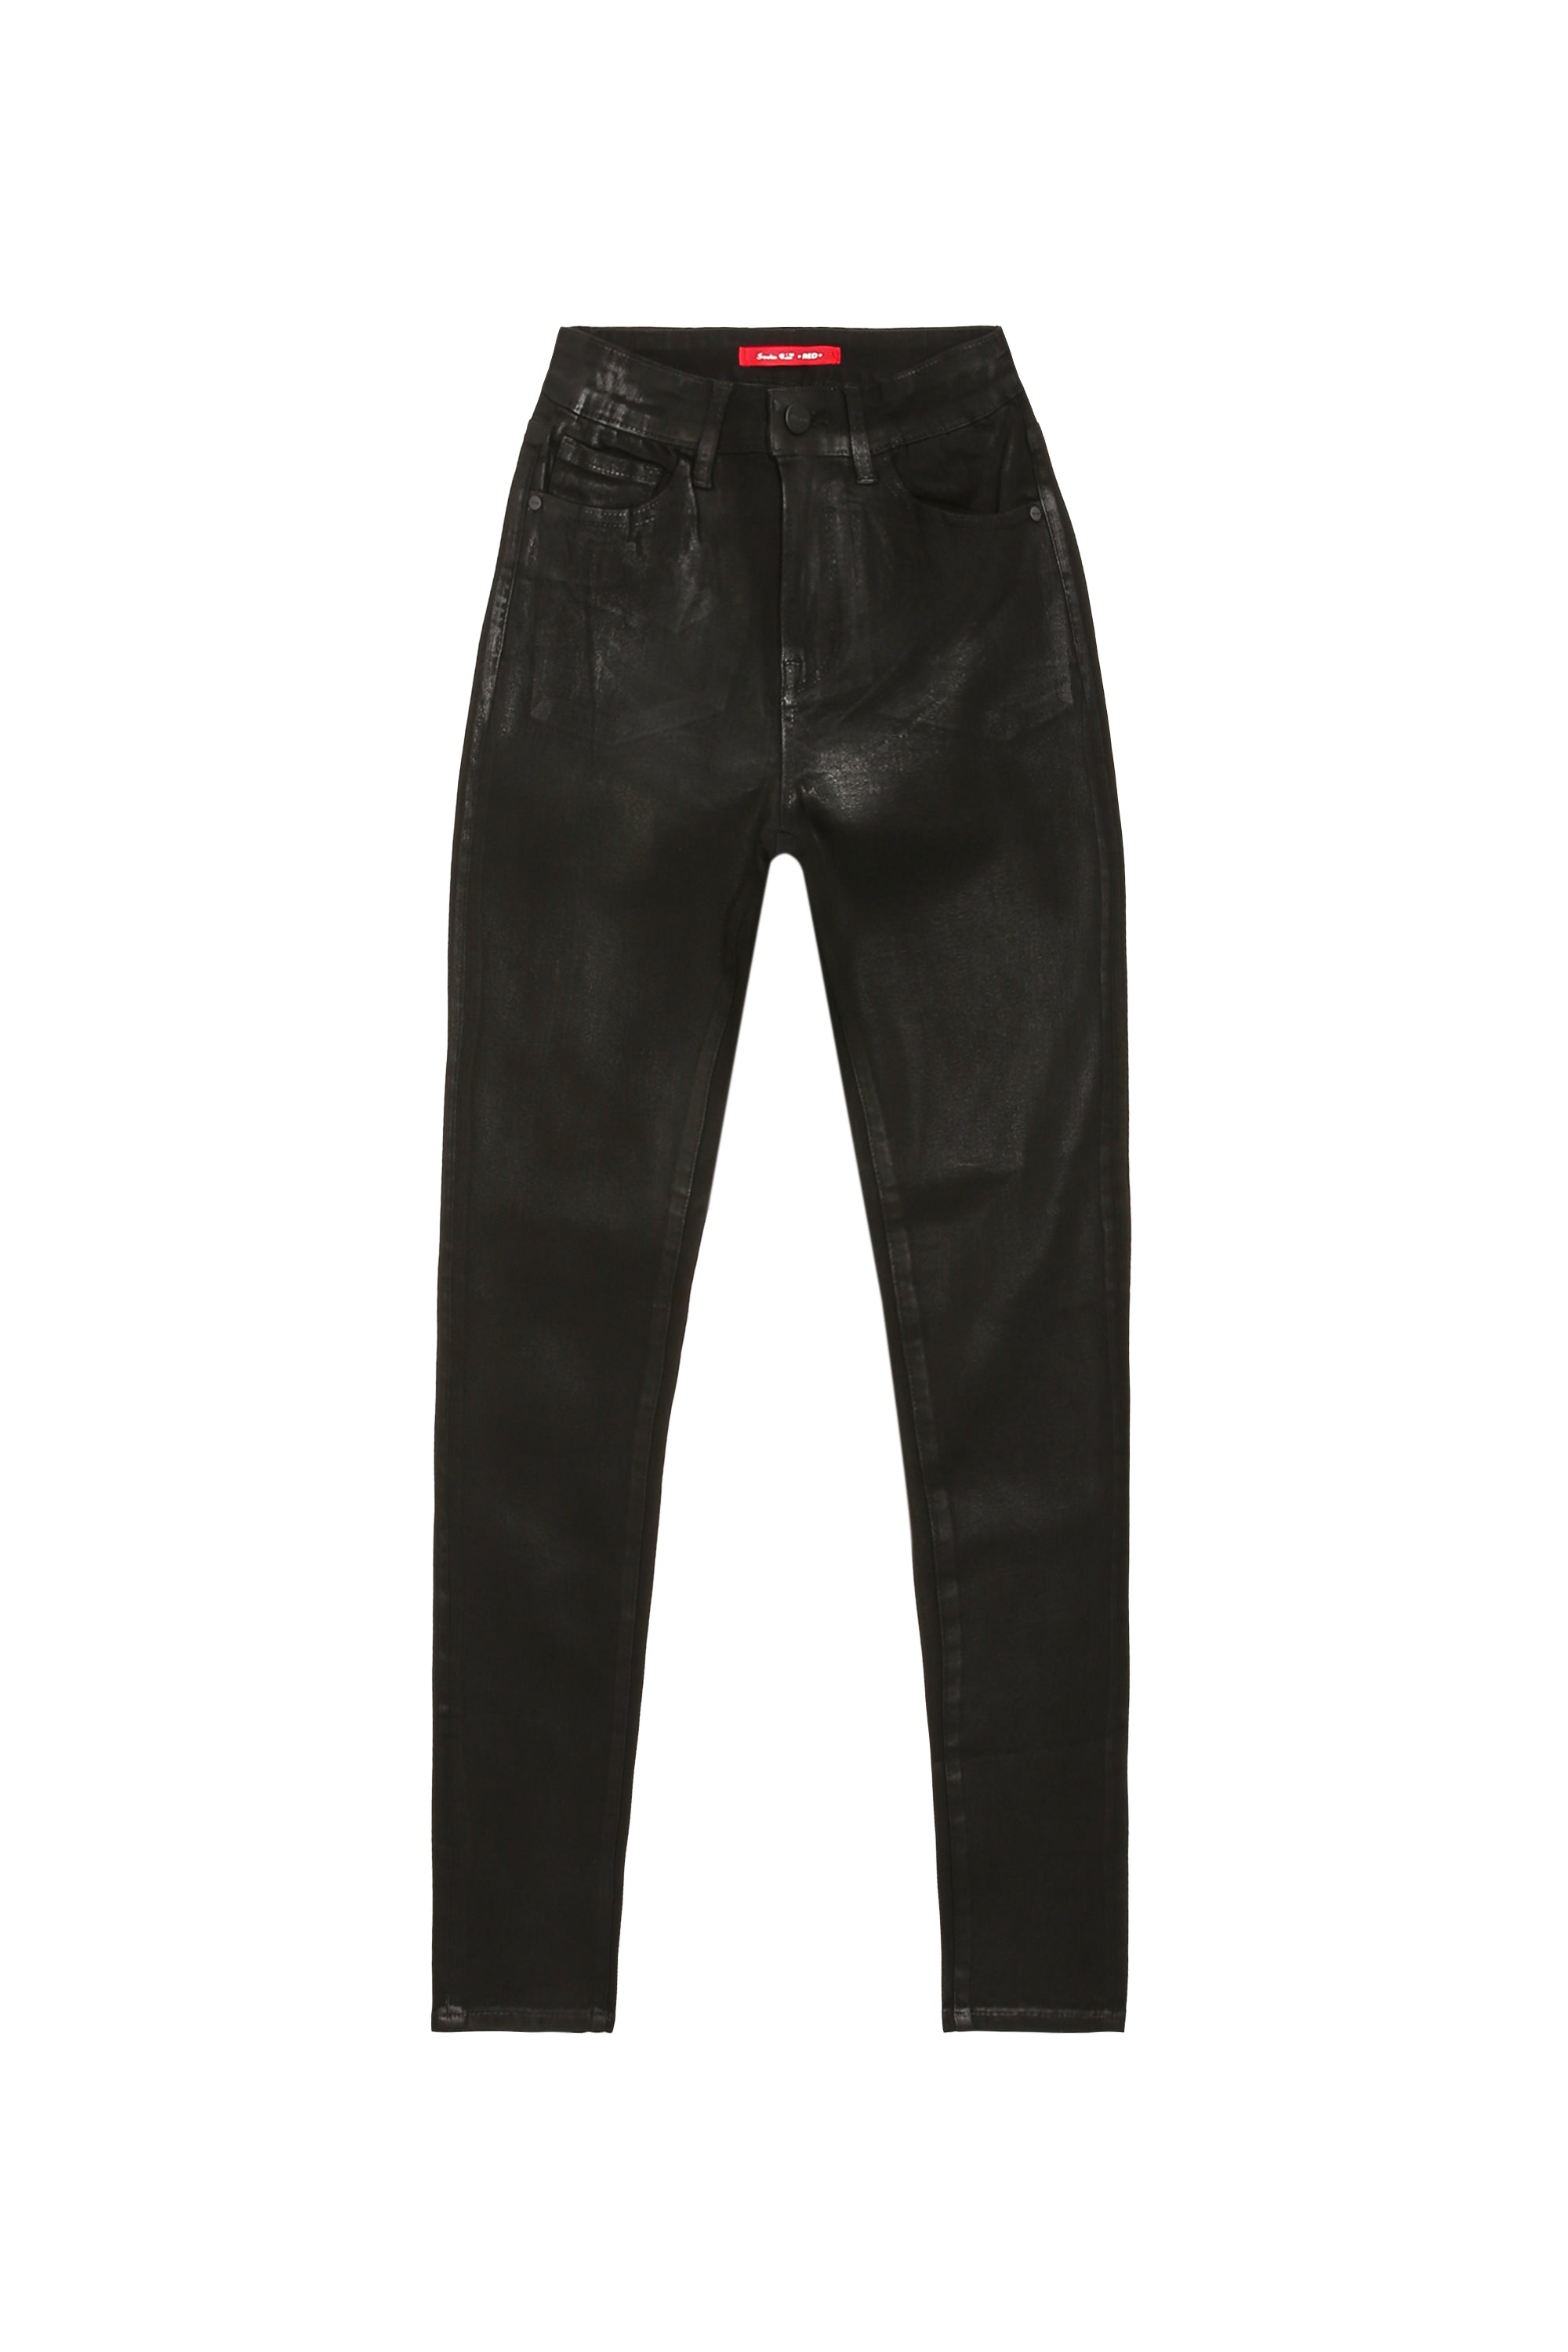 High Rise Slim Skinny Wax Coated Denim Jeans - Polished Black